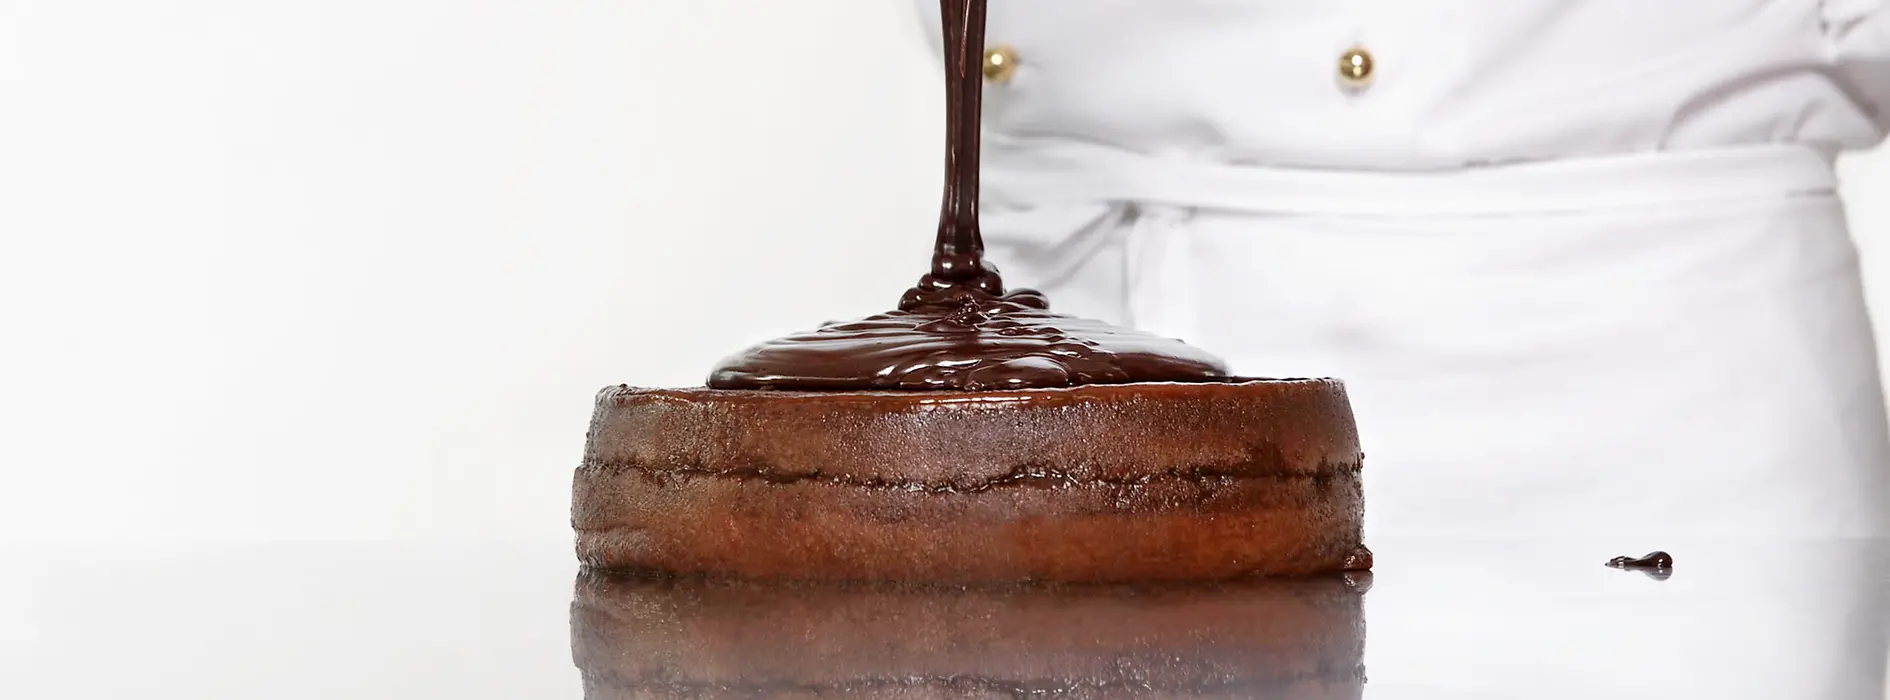 Un pastel de chocolate Sachertorte es recubierto por su característico glaseado de chocolate